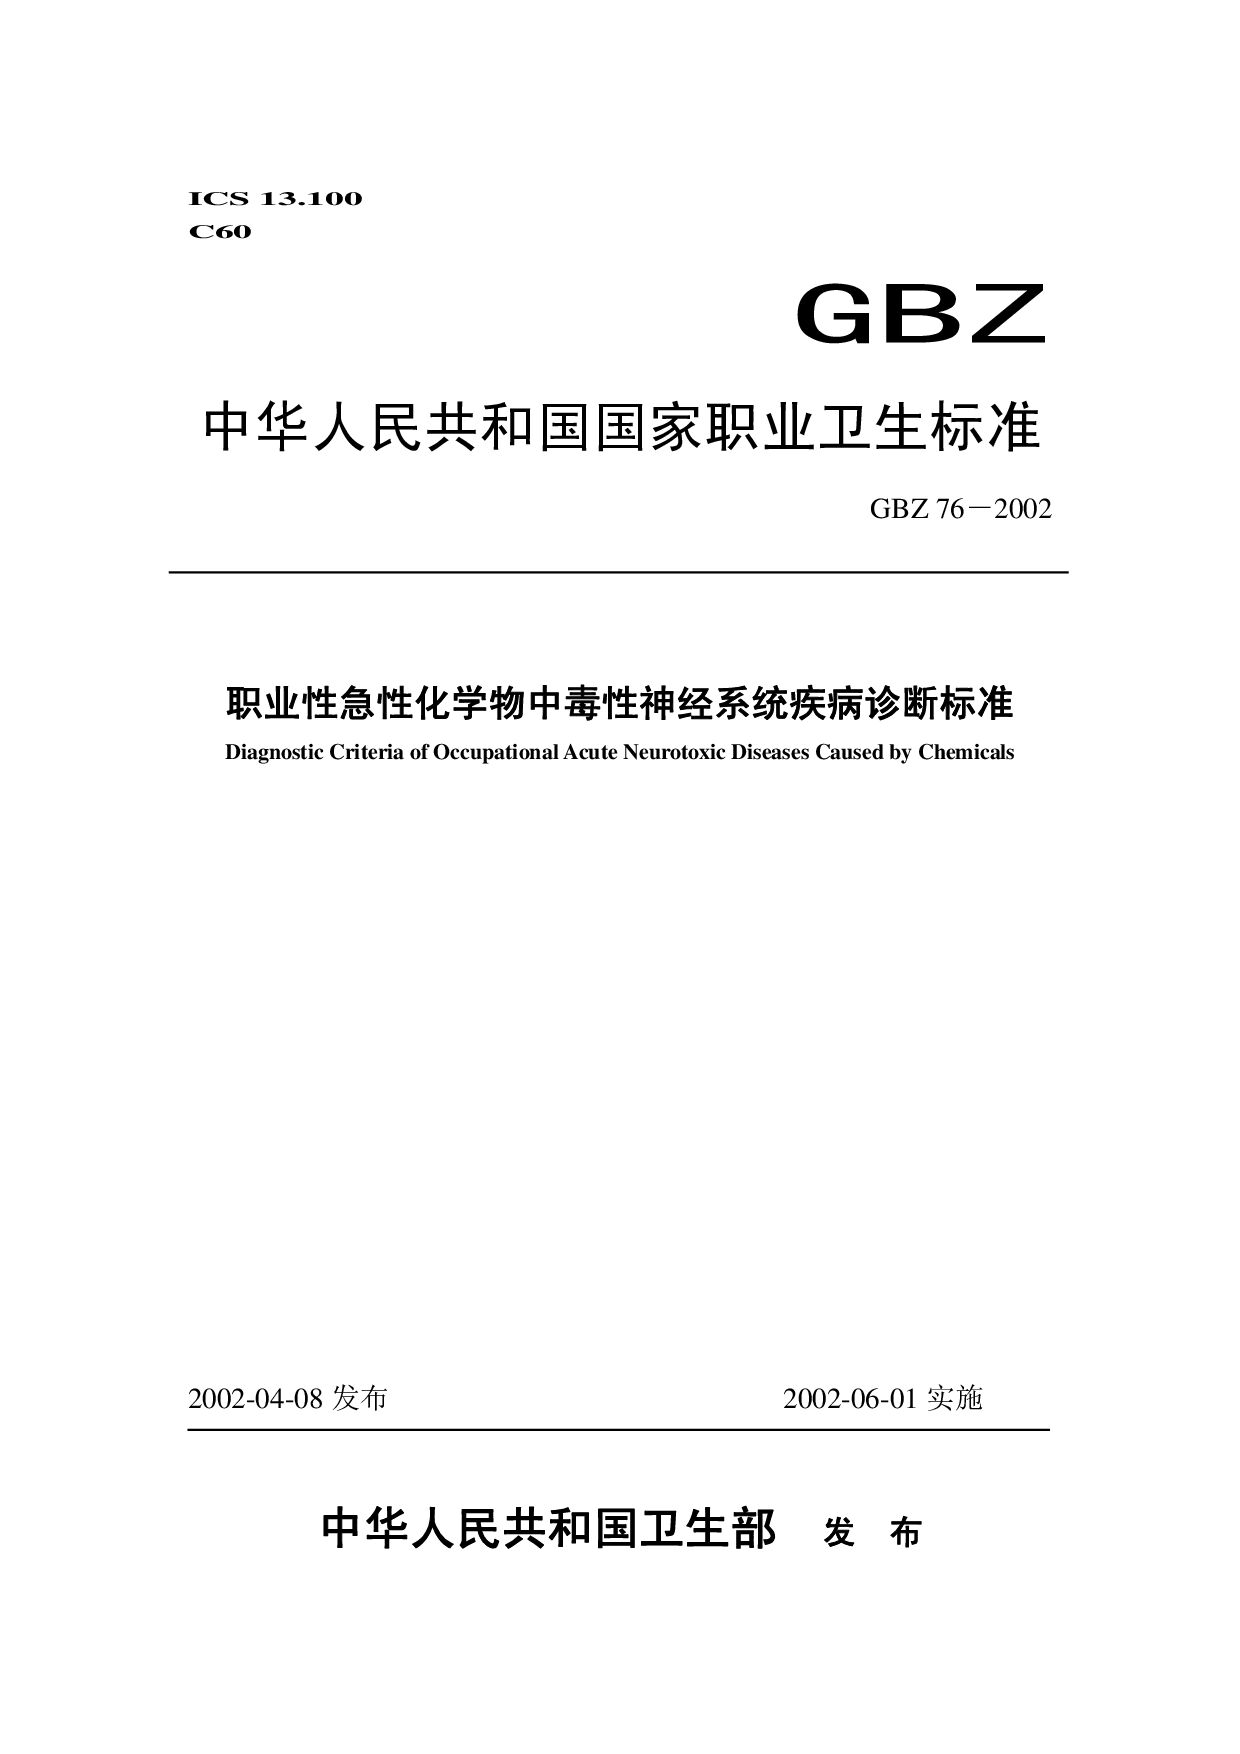 GBZ 76-2002